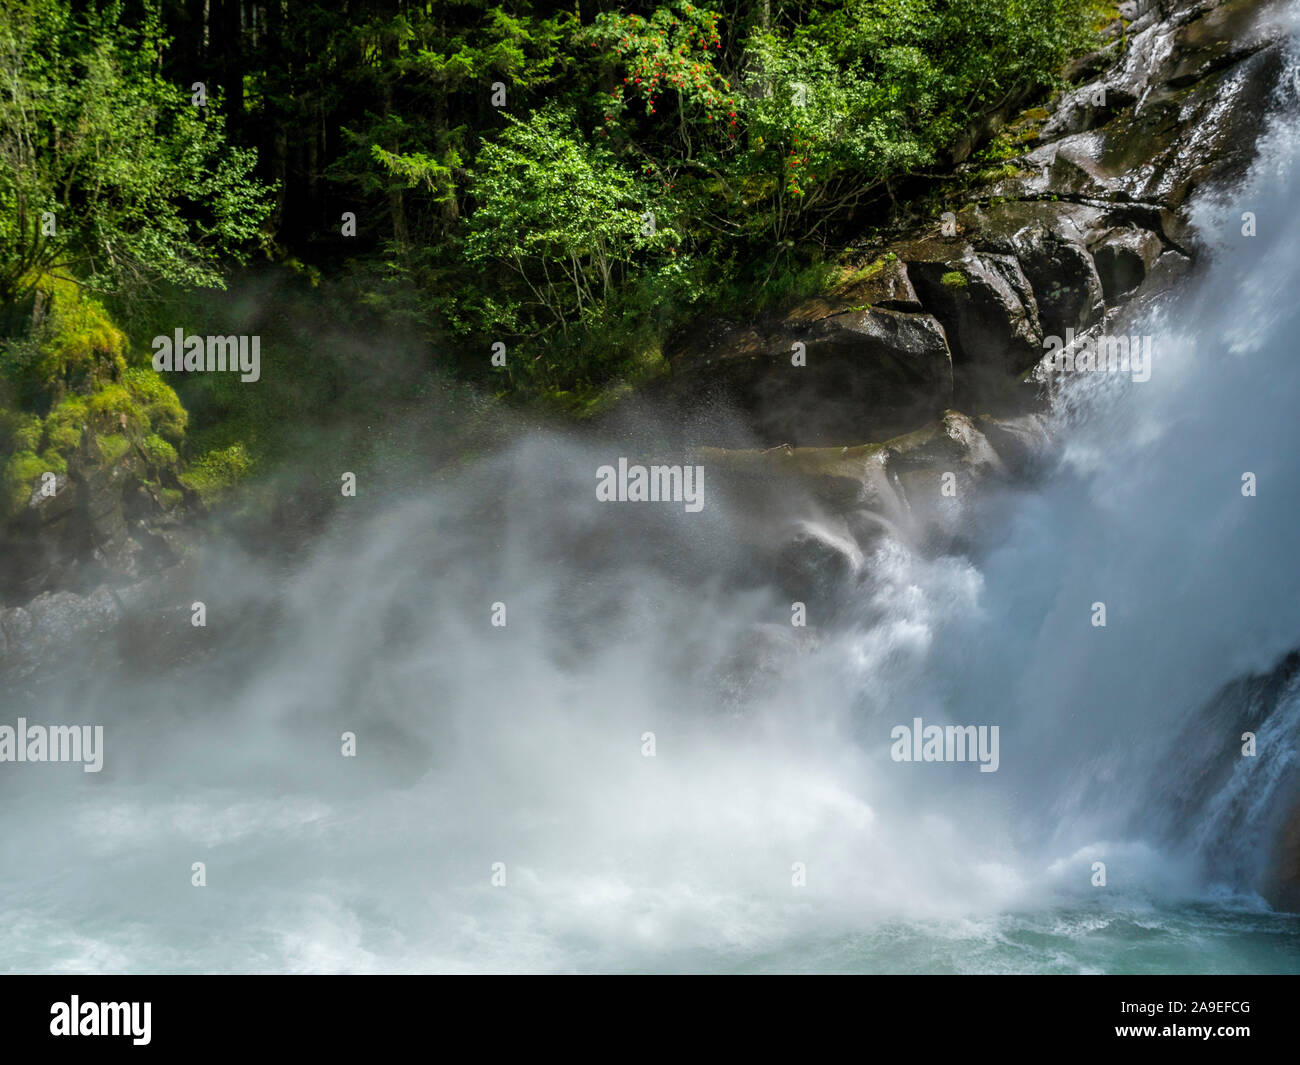 Krimml Waterfalls, High Tauern National Park, Krimml, Pinzgau region, Salzburger Land region, Salzburg (state), Austria, Europe Stock Photo